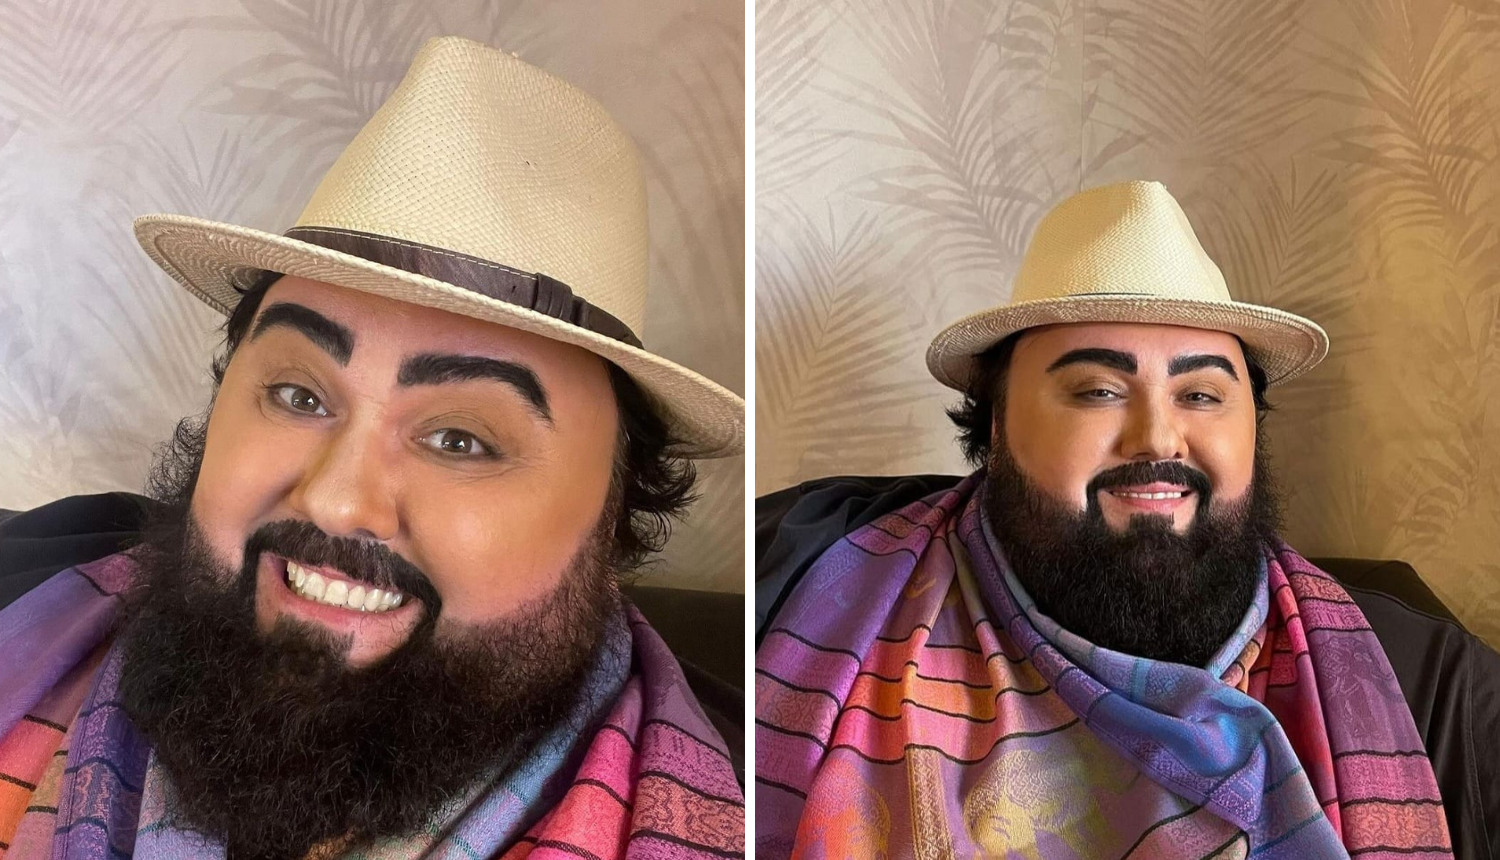 Jacques Houdek oduševio svoje pratitelje maskom Pavarottija: 'Vrh si! Izgledaš isto kao on!'